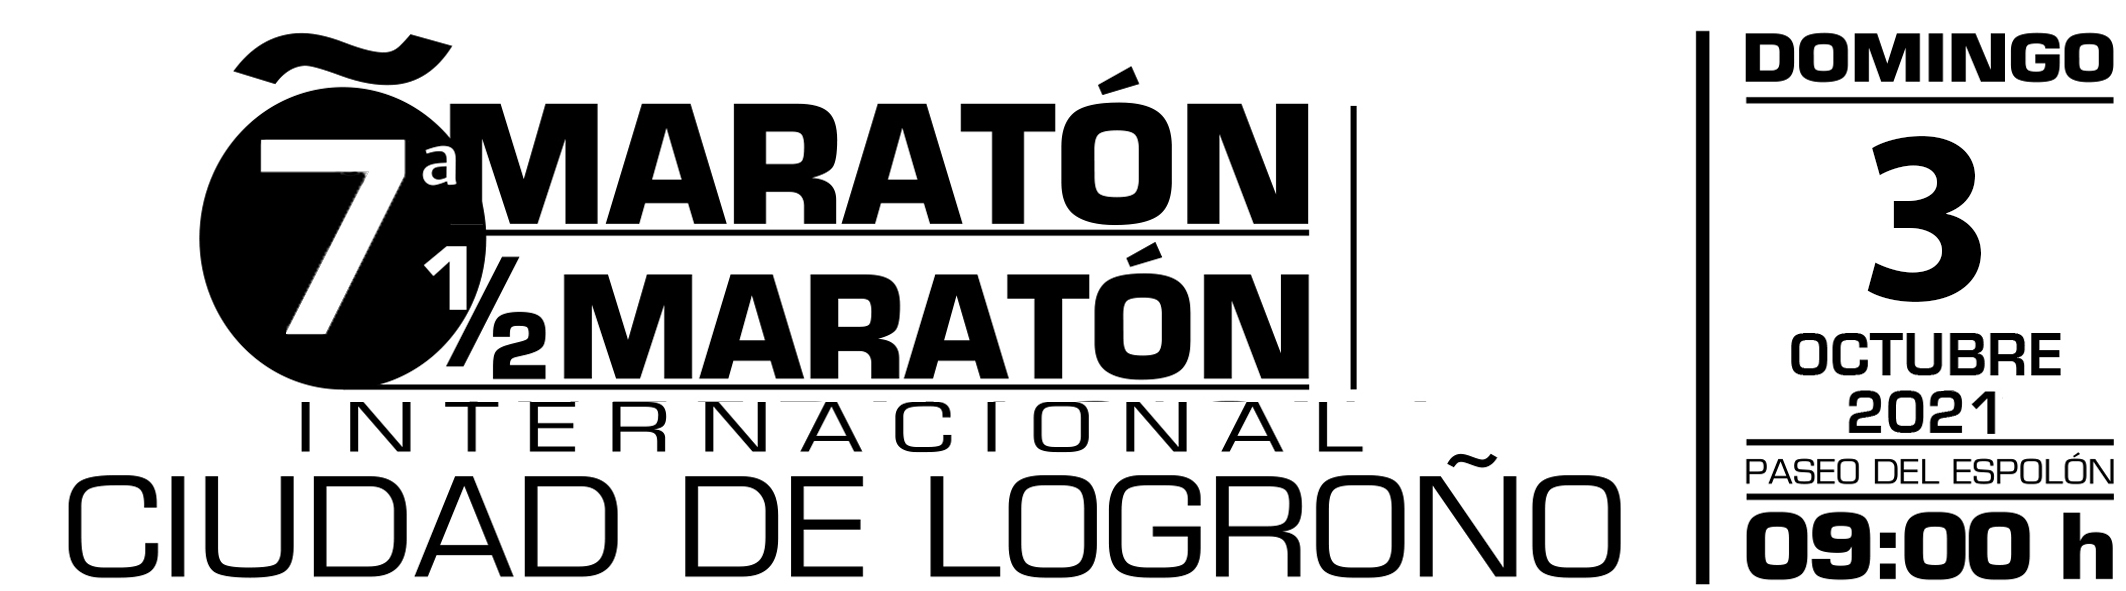 Anexo 1 - Maratón Ciudad de Logroño 2022